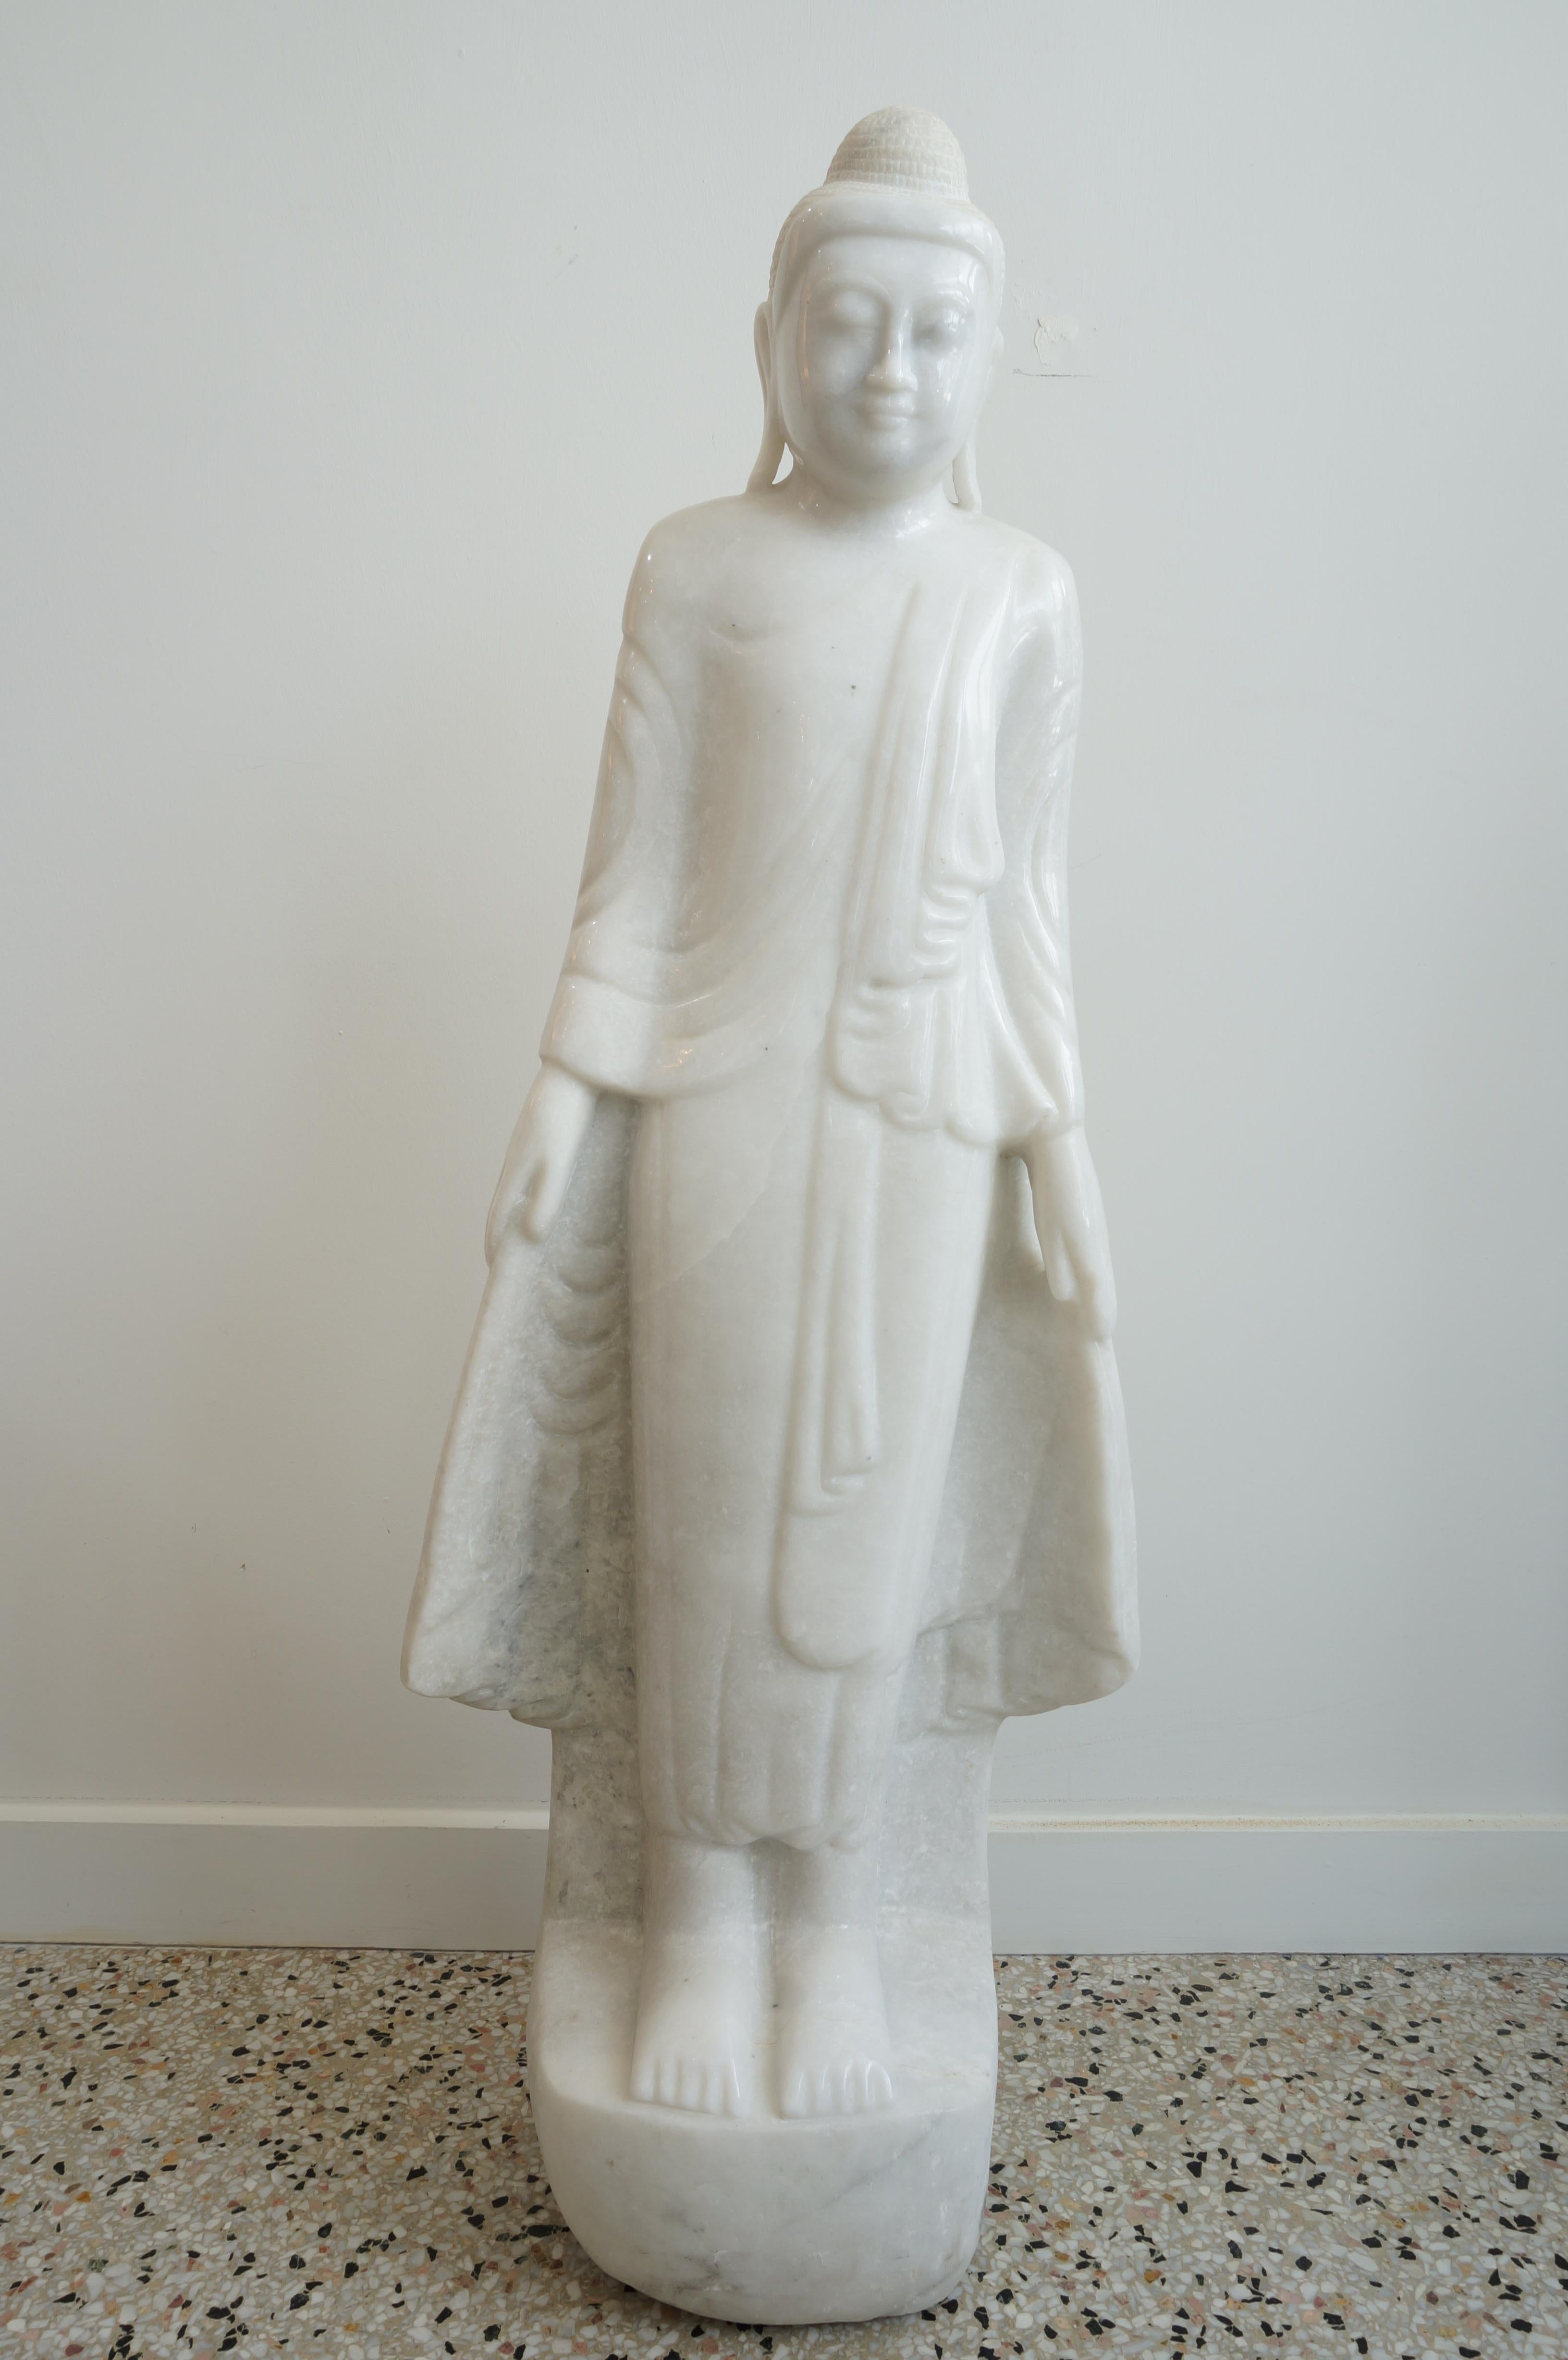 Diese wunderschöne handgeschnitzte Skulptur aus weißem Marmor stellt einen birmanischen Buddha im Mandalay-Stil dar und wurde aus einem Nachlass in Palm Beach erworben. 

Anmerkung: Wir sind uns über das Alter des Stücks nicht sicher.

 